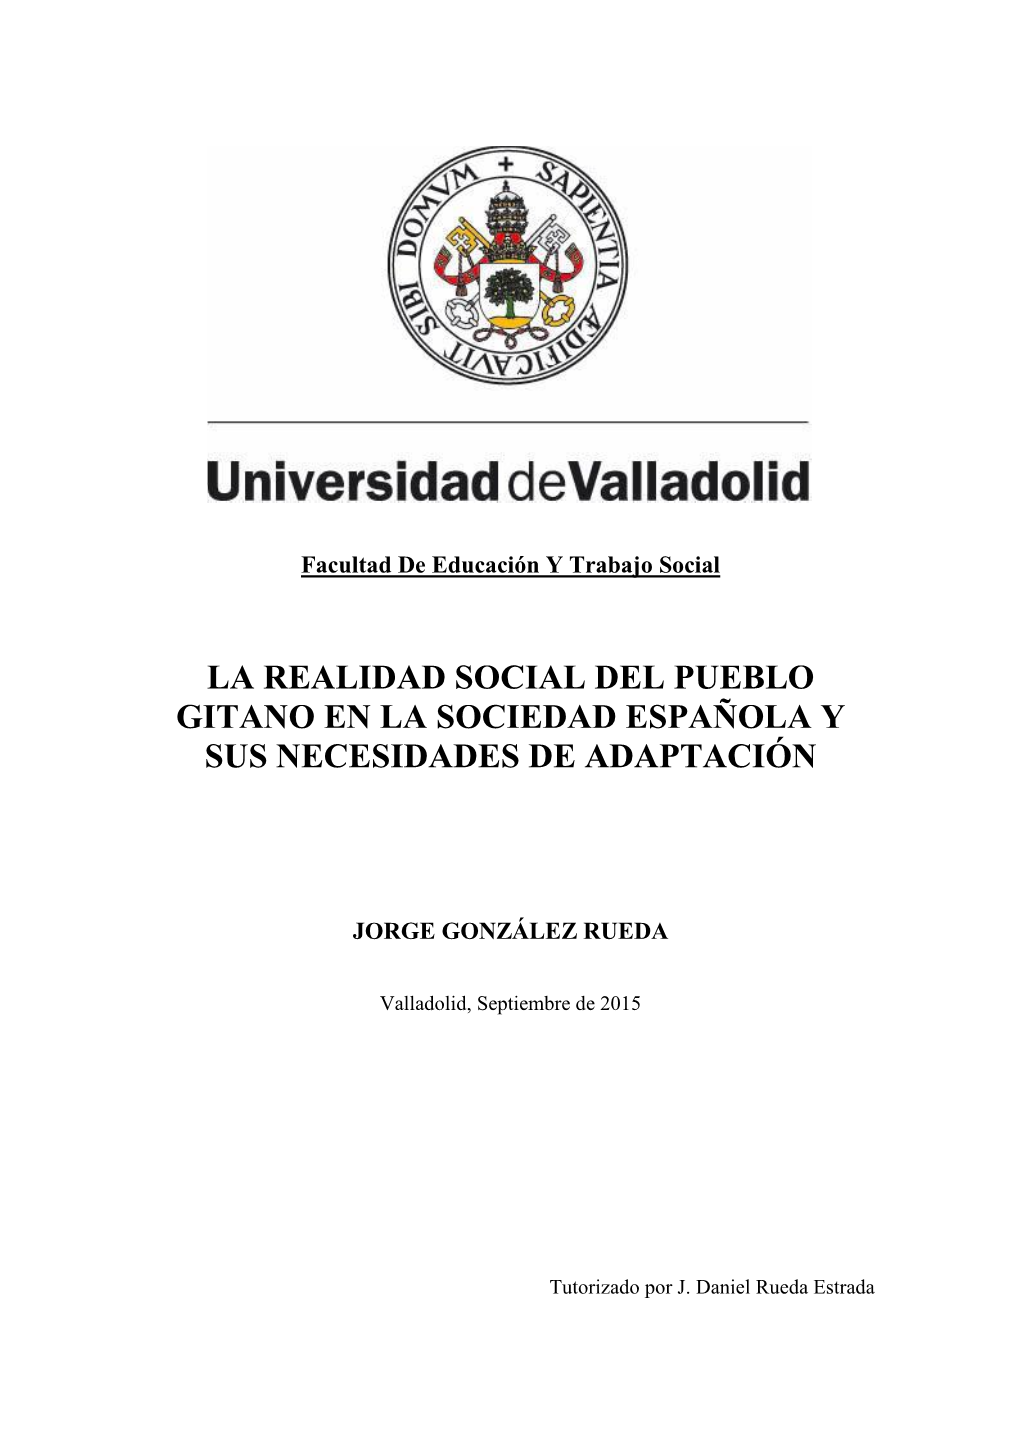 La Realidad Social Del Pueblo Gitano En La Sociedad Española Y Sus Necesidades De Adaptación